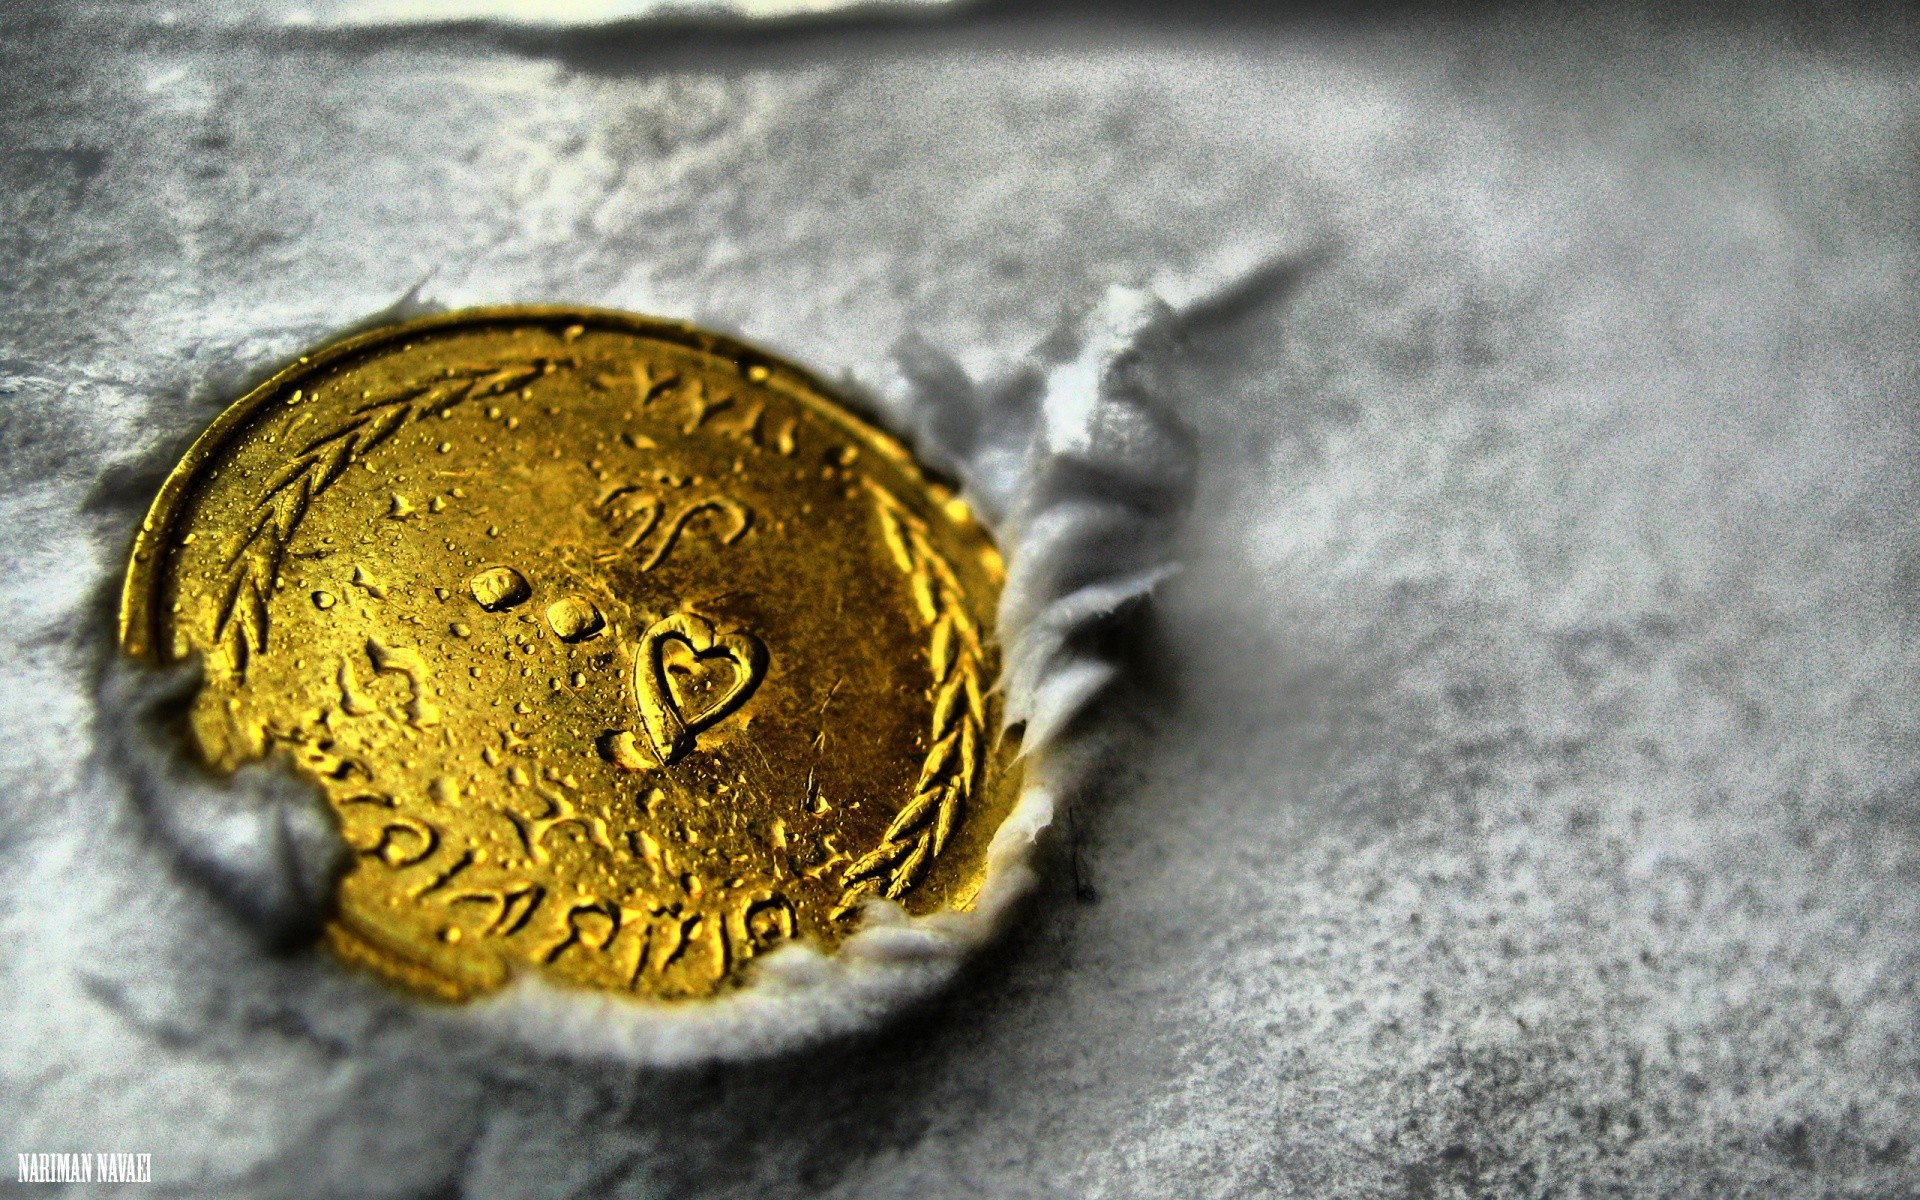 Монета Золотая